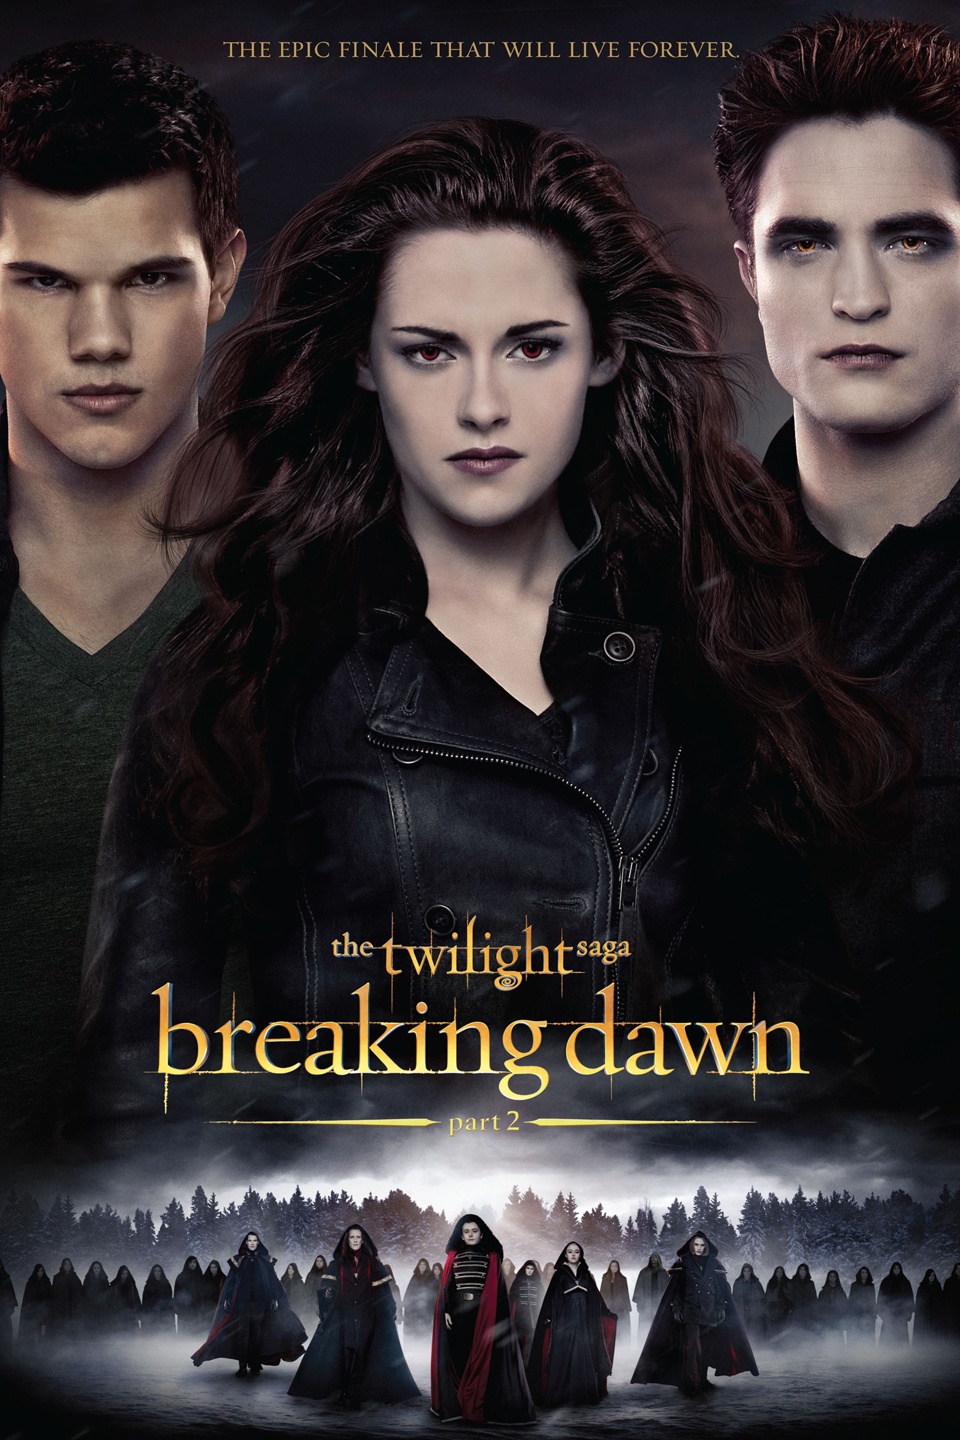 The Twilight Saga: Breaking Dawn Pt. 2